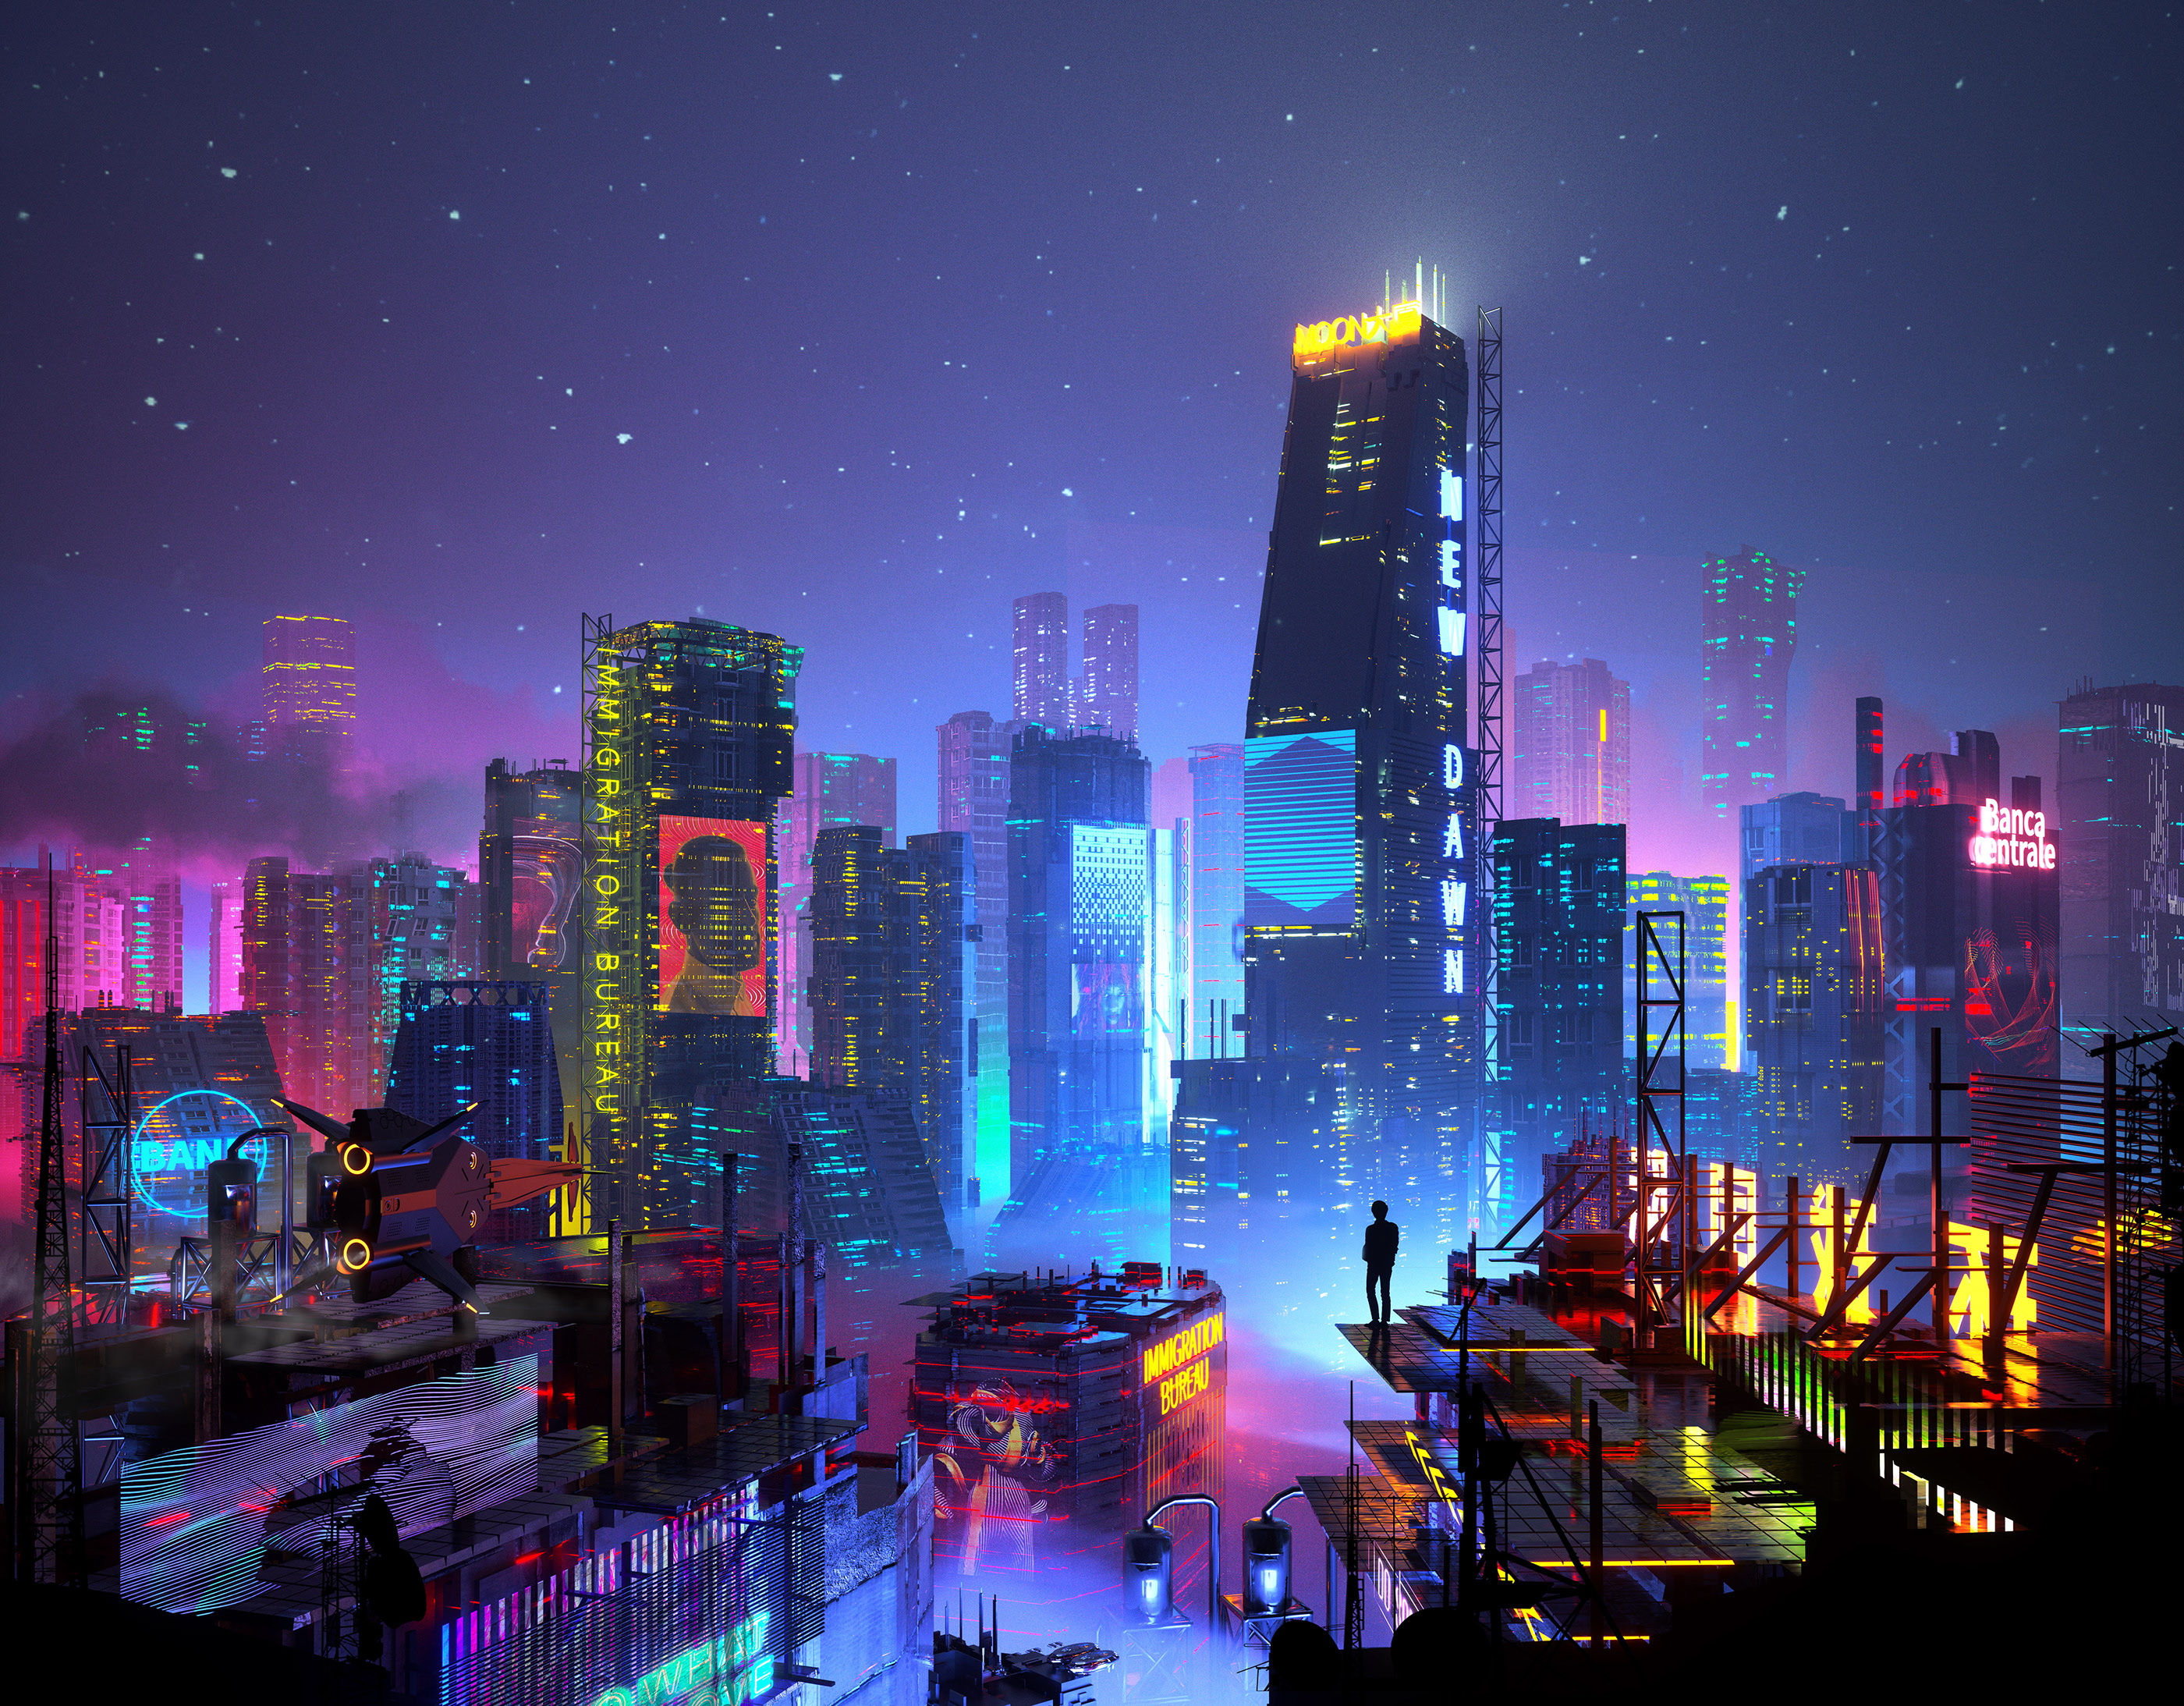 General 2800x2187 digital art artwork illustration city cityscape night futuristic futuristic city cyberpunk building architecture skyscraper stars